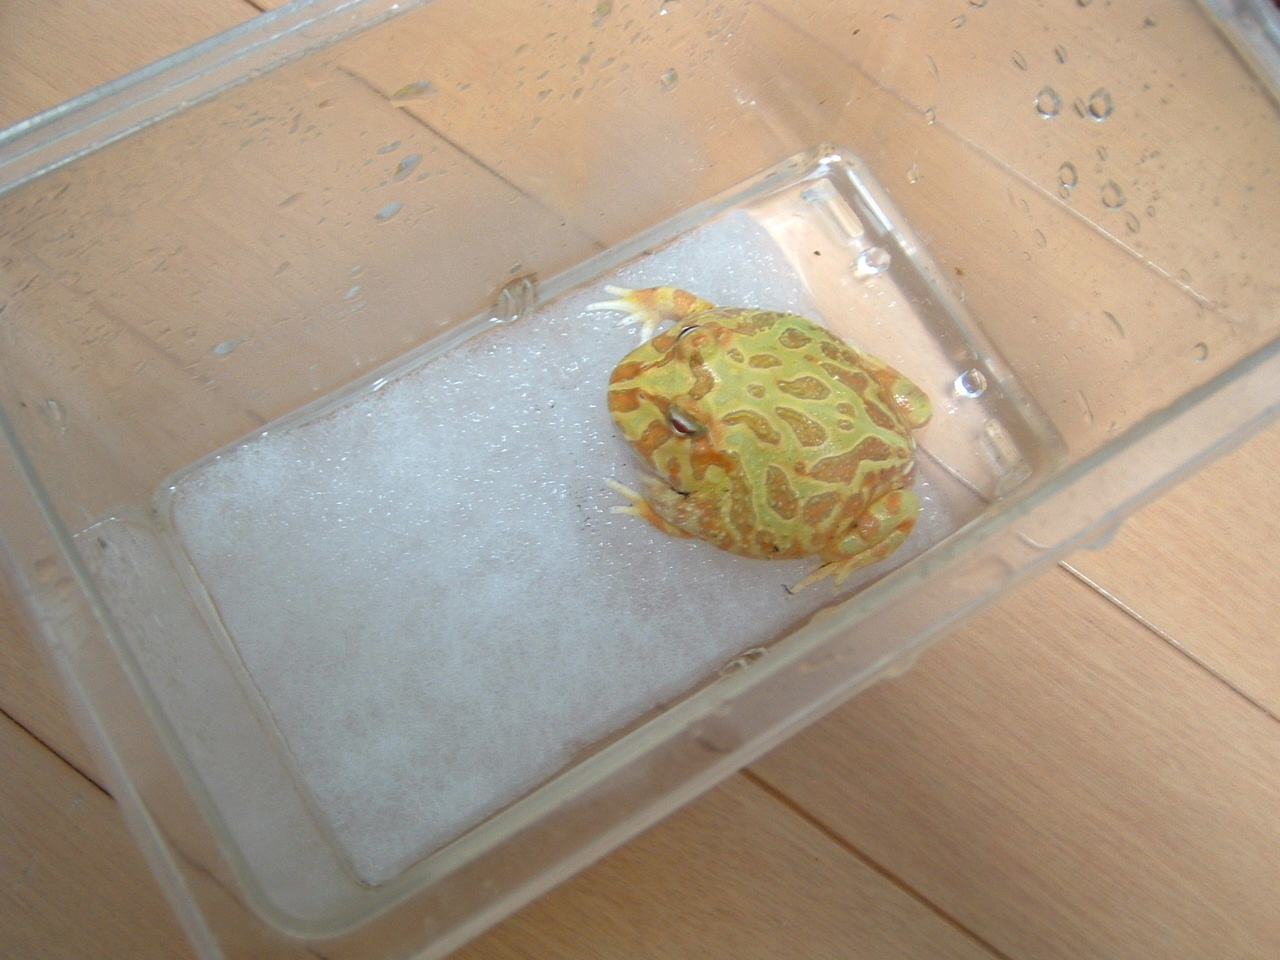 060328.yellow-frog.jpg